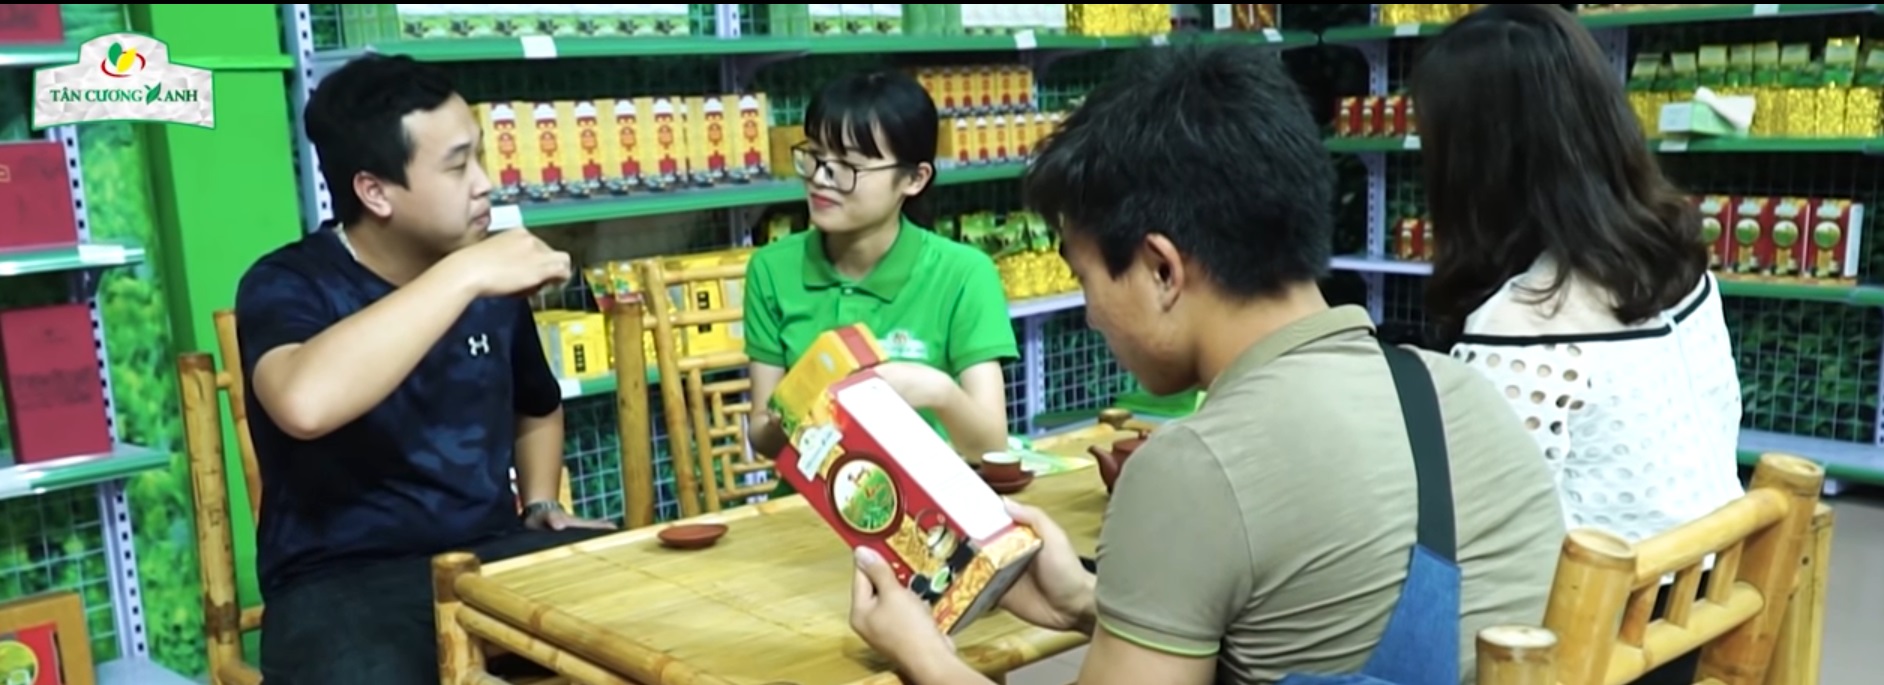 Văn hóa uống Trà trong cuộc sống hằng ngày của người Việt